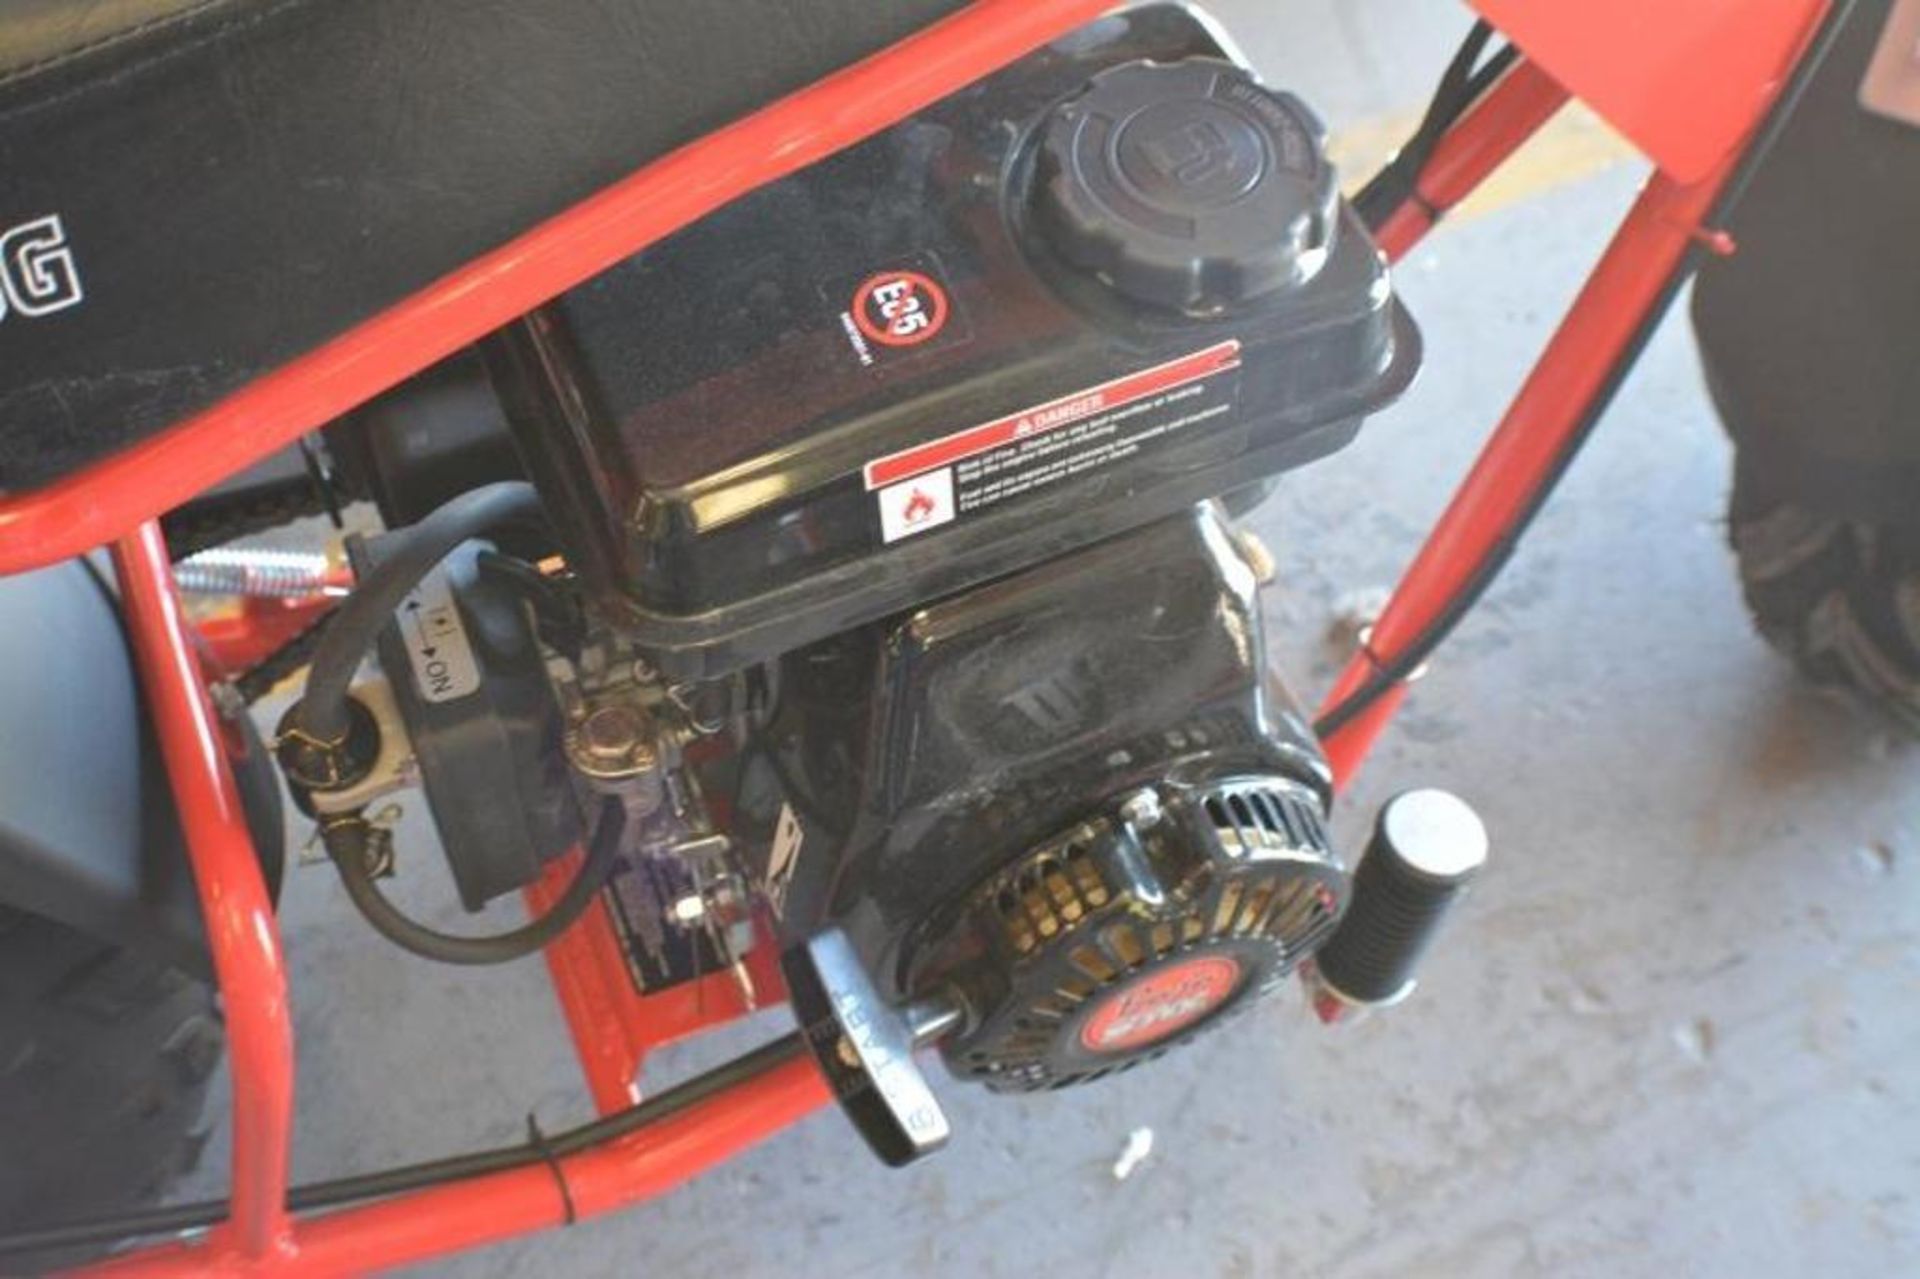 Mini Bike 97cc 4 Stroke Red/ Black Color - Image 3 of 5